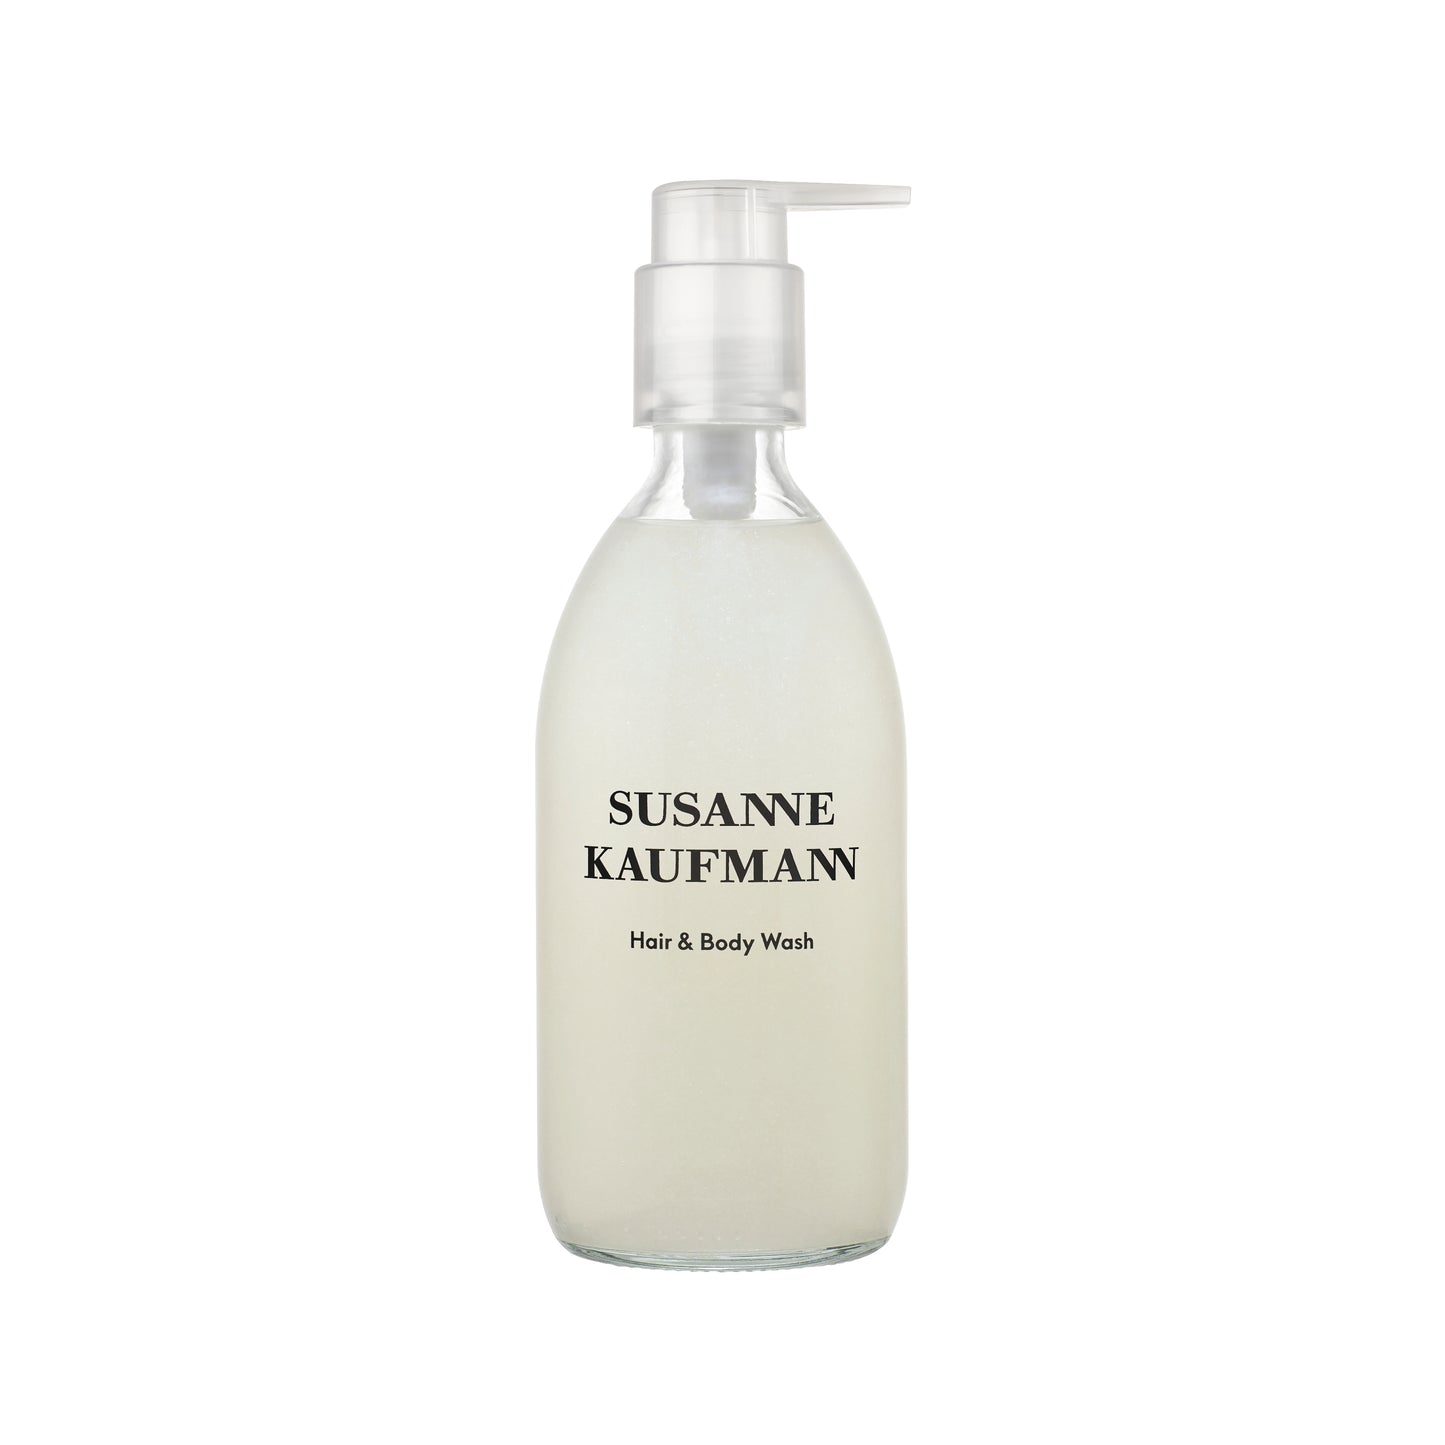 SUSANNE-KAUFMANN-Hair-Body-Wash